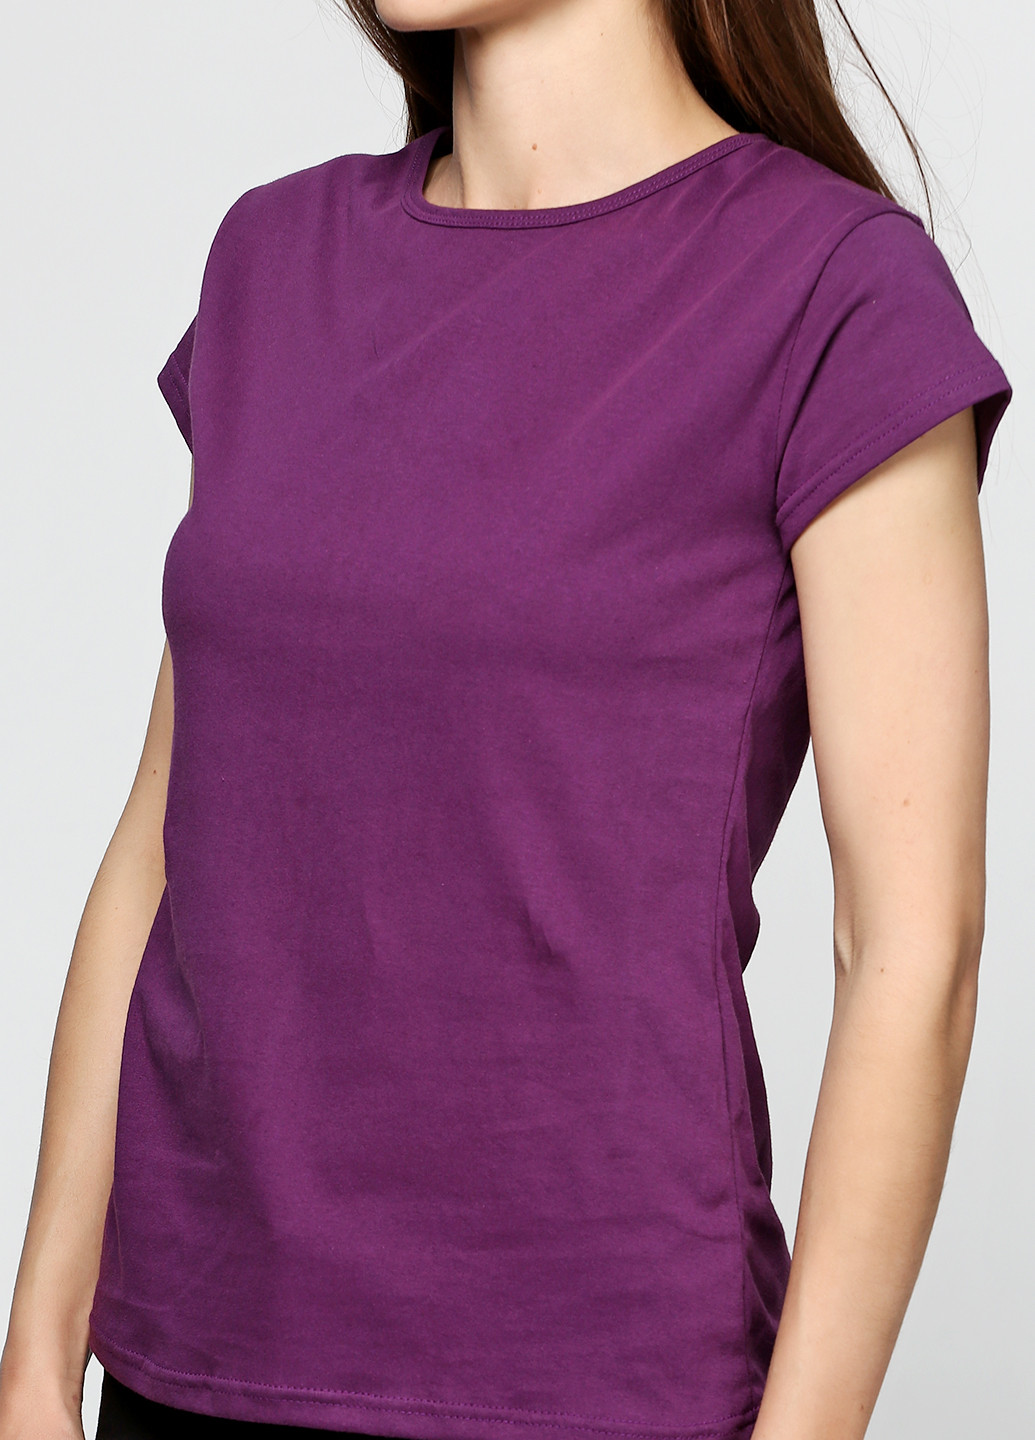 Фіолетова літня футболка з коротким рукавом Shik